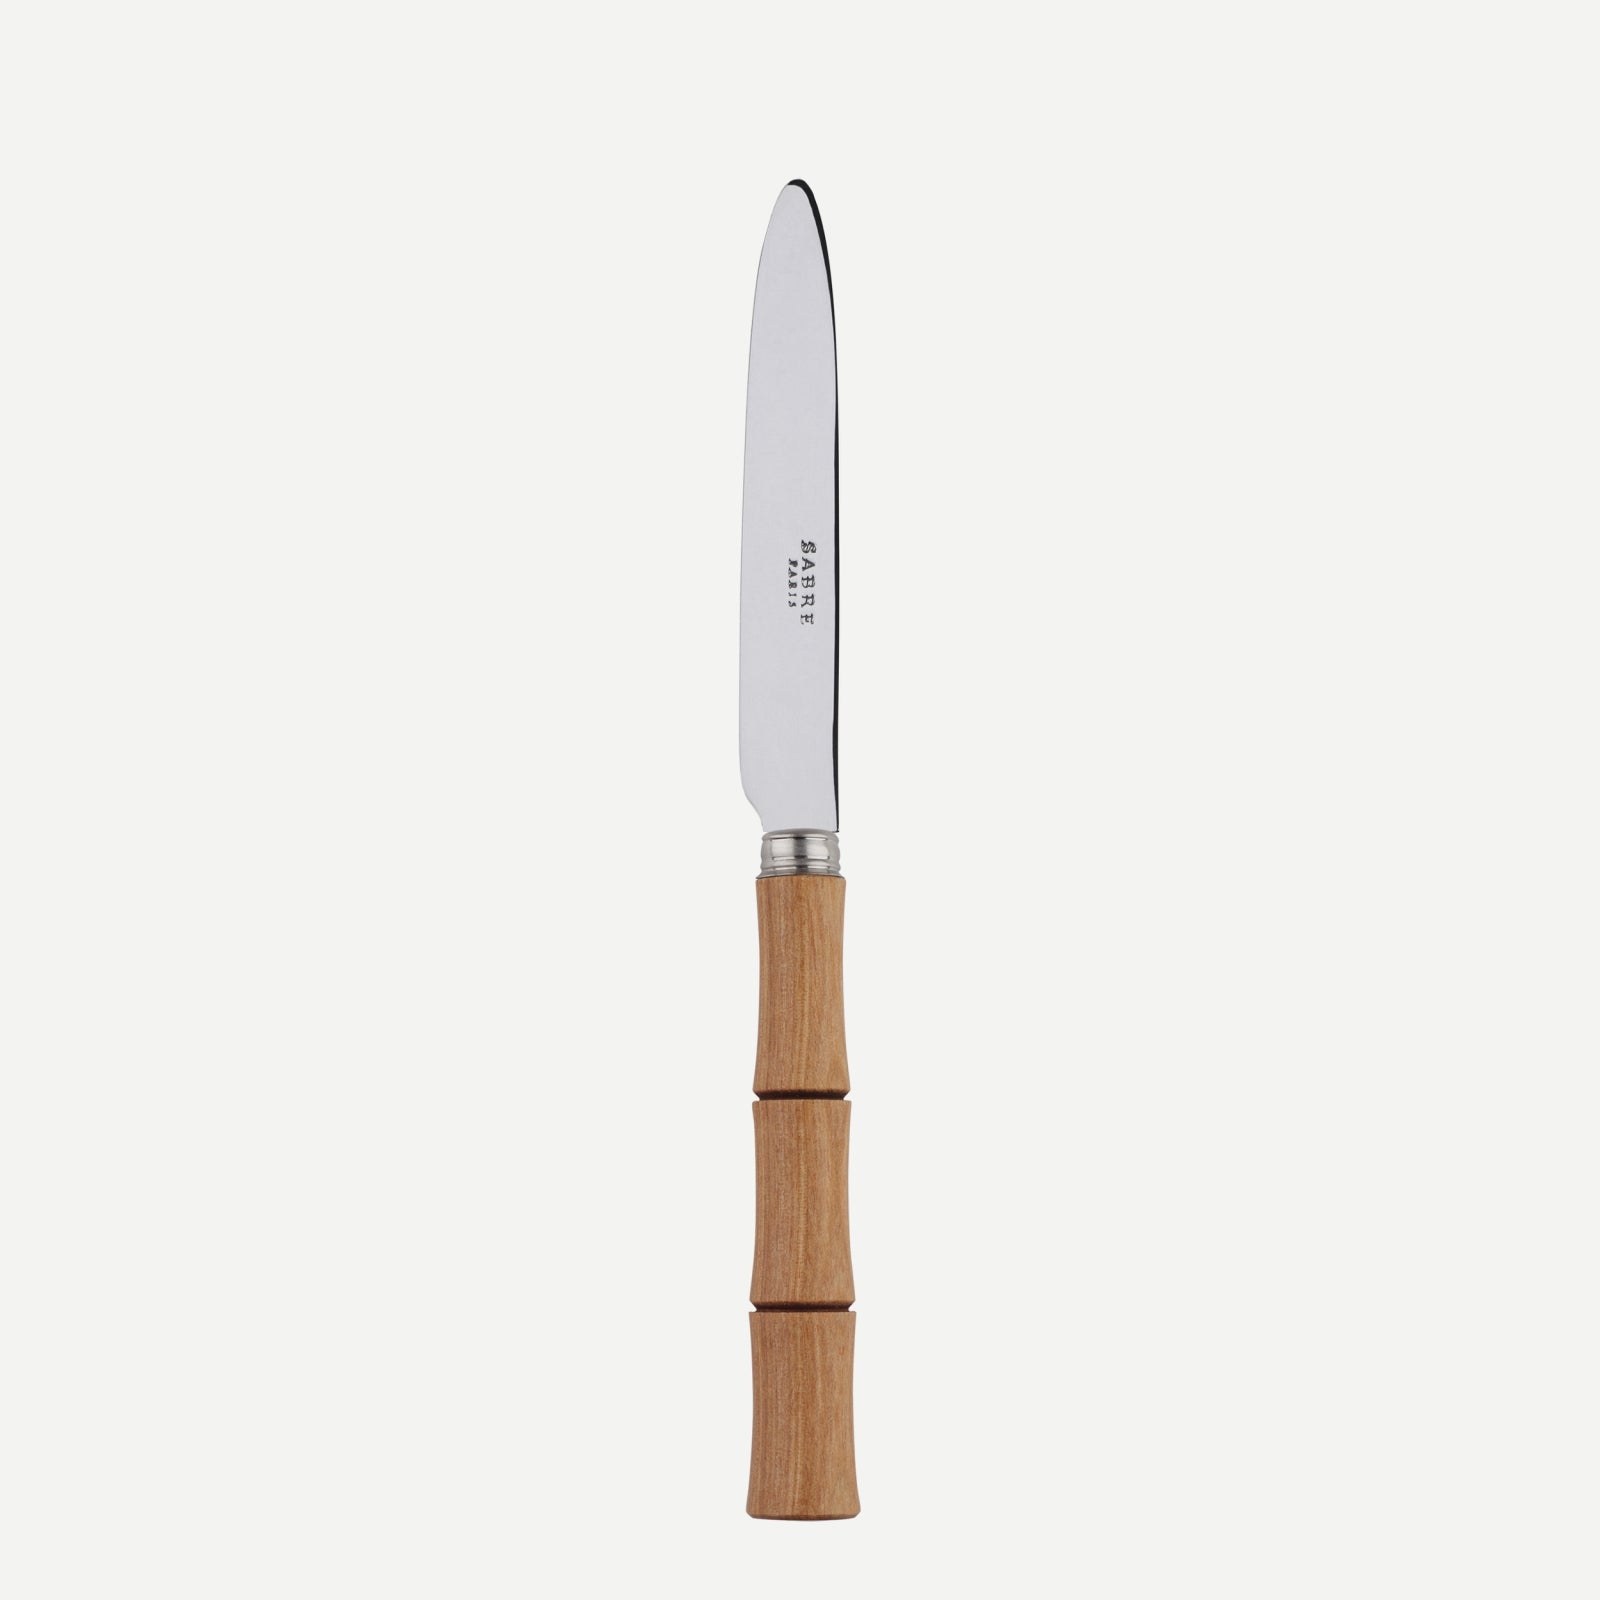 Dessert knife - Bamboo - Light press wood